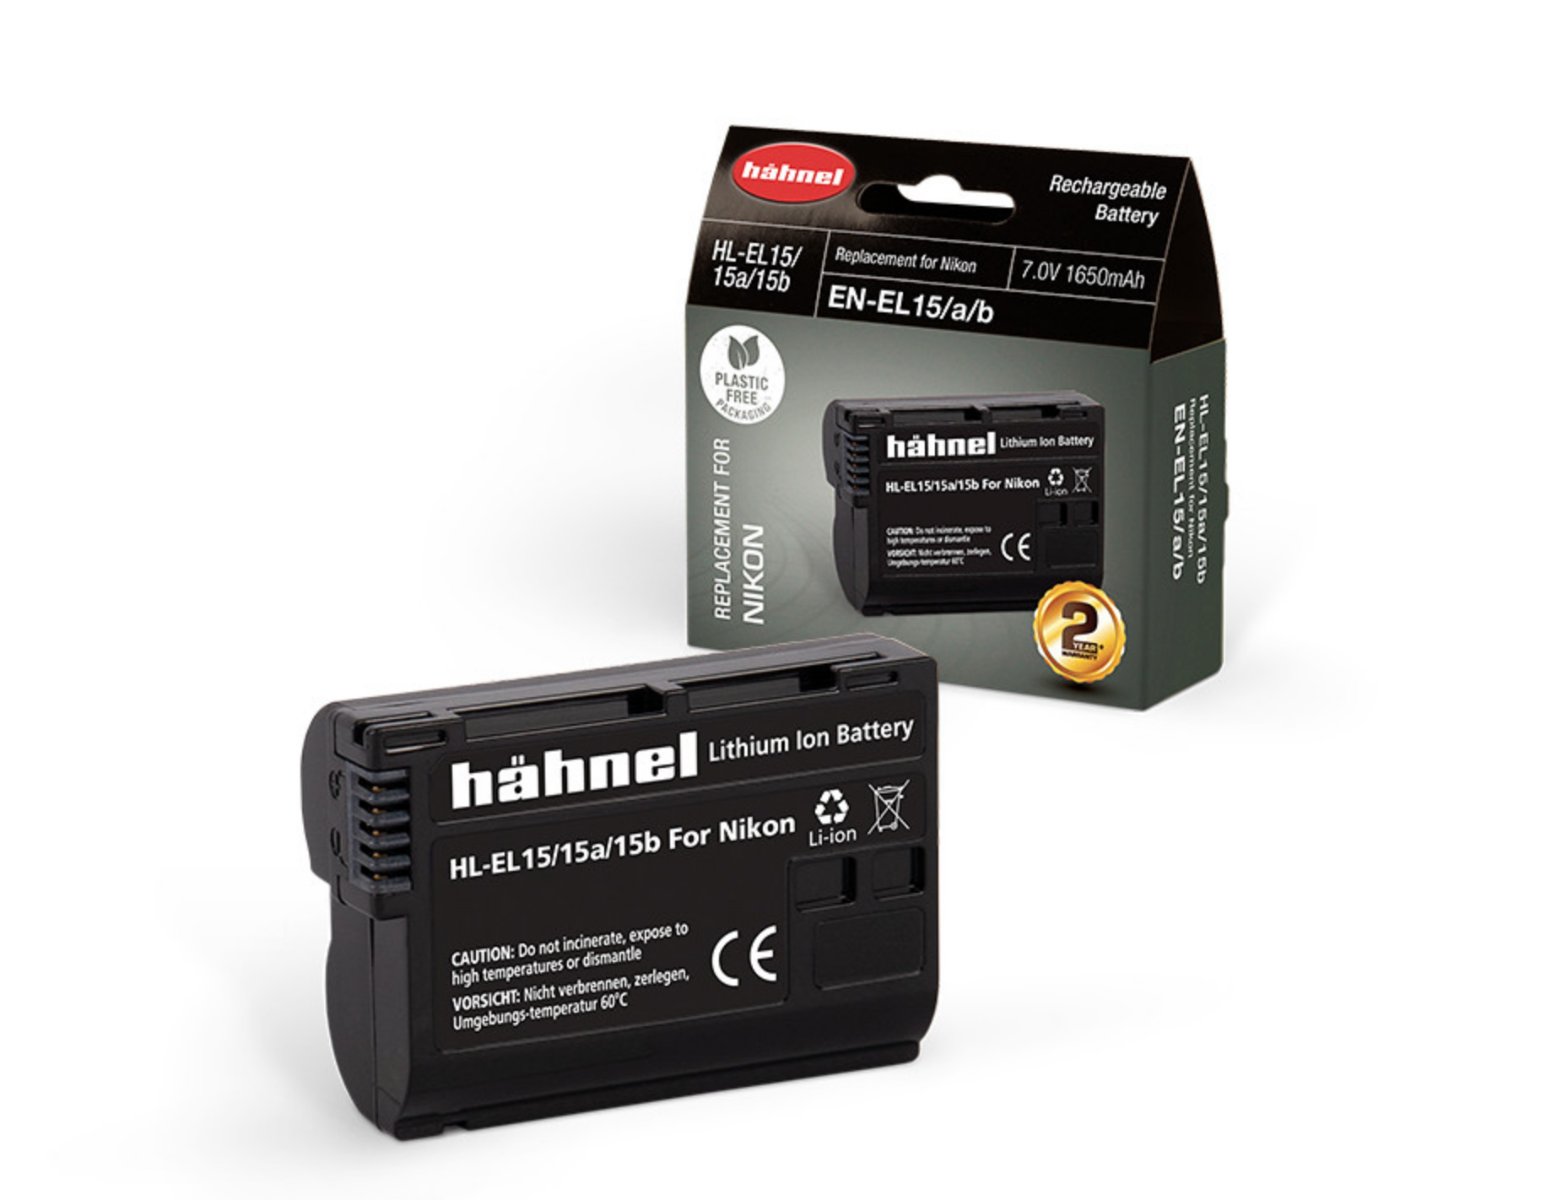 Product Image of Hahnel HL-EL15 Nikon Type Li-ion Battery Replacement for D7000 / D800 / D800E - EN-EL15